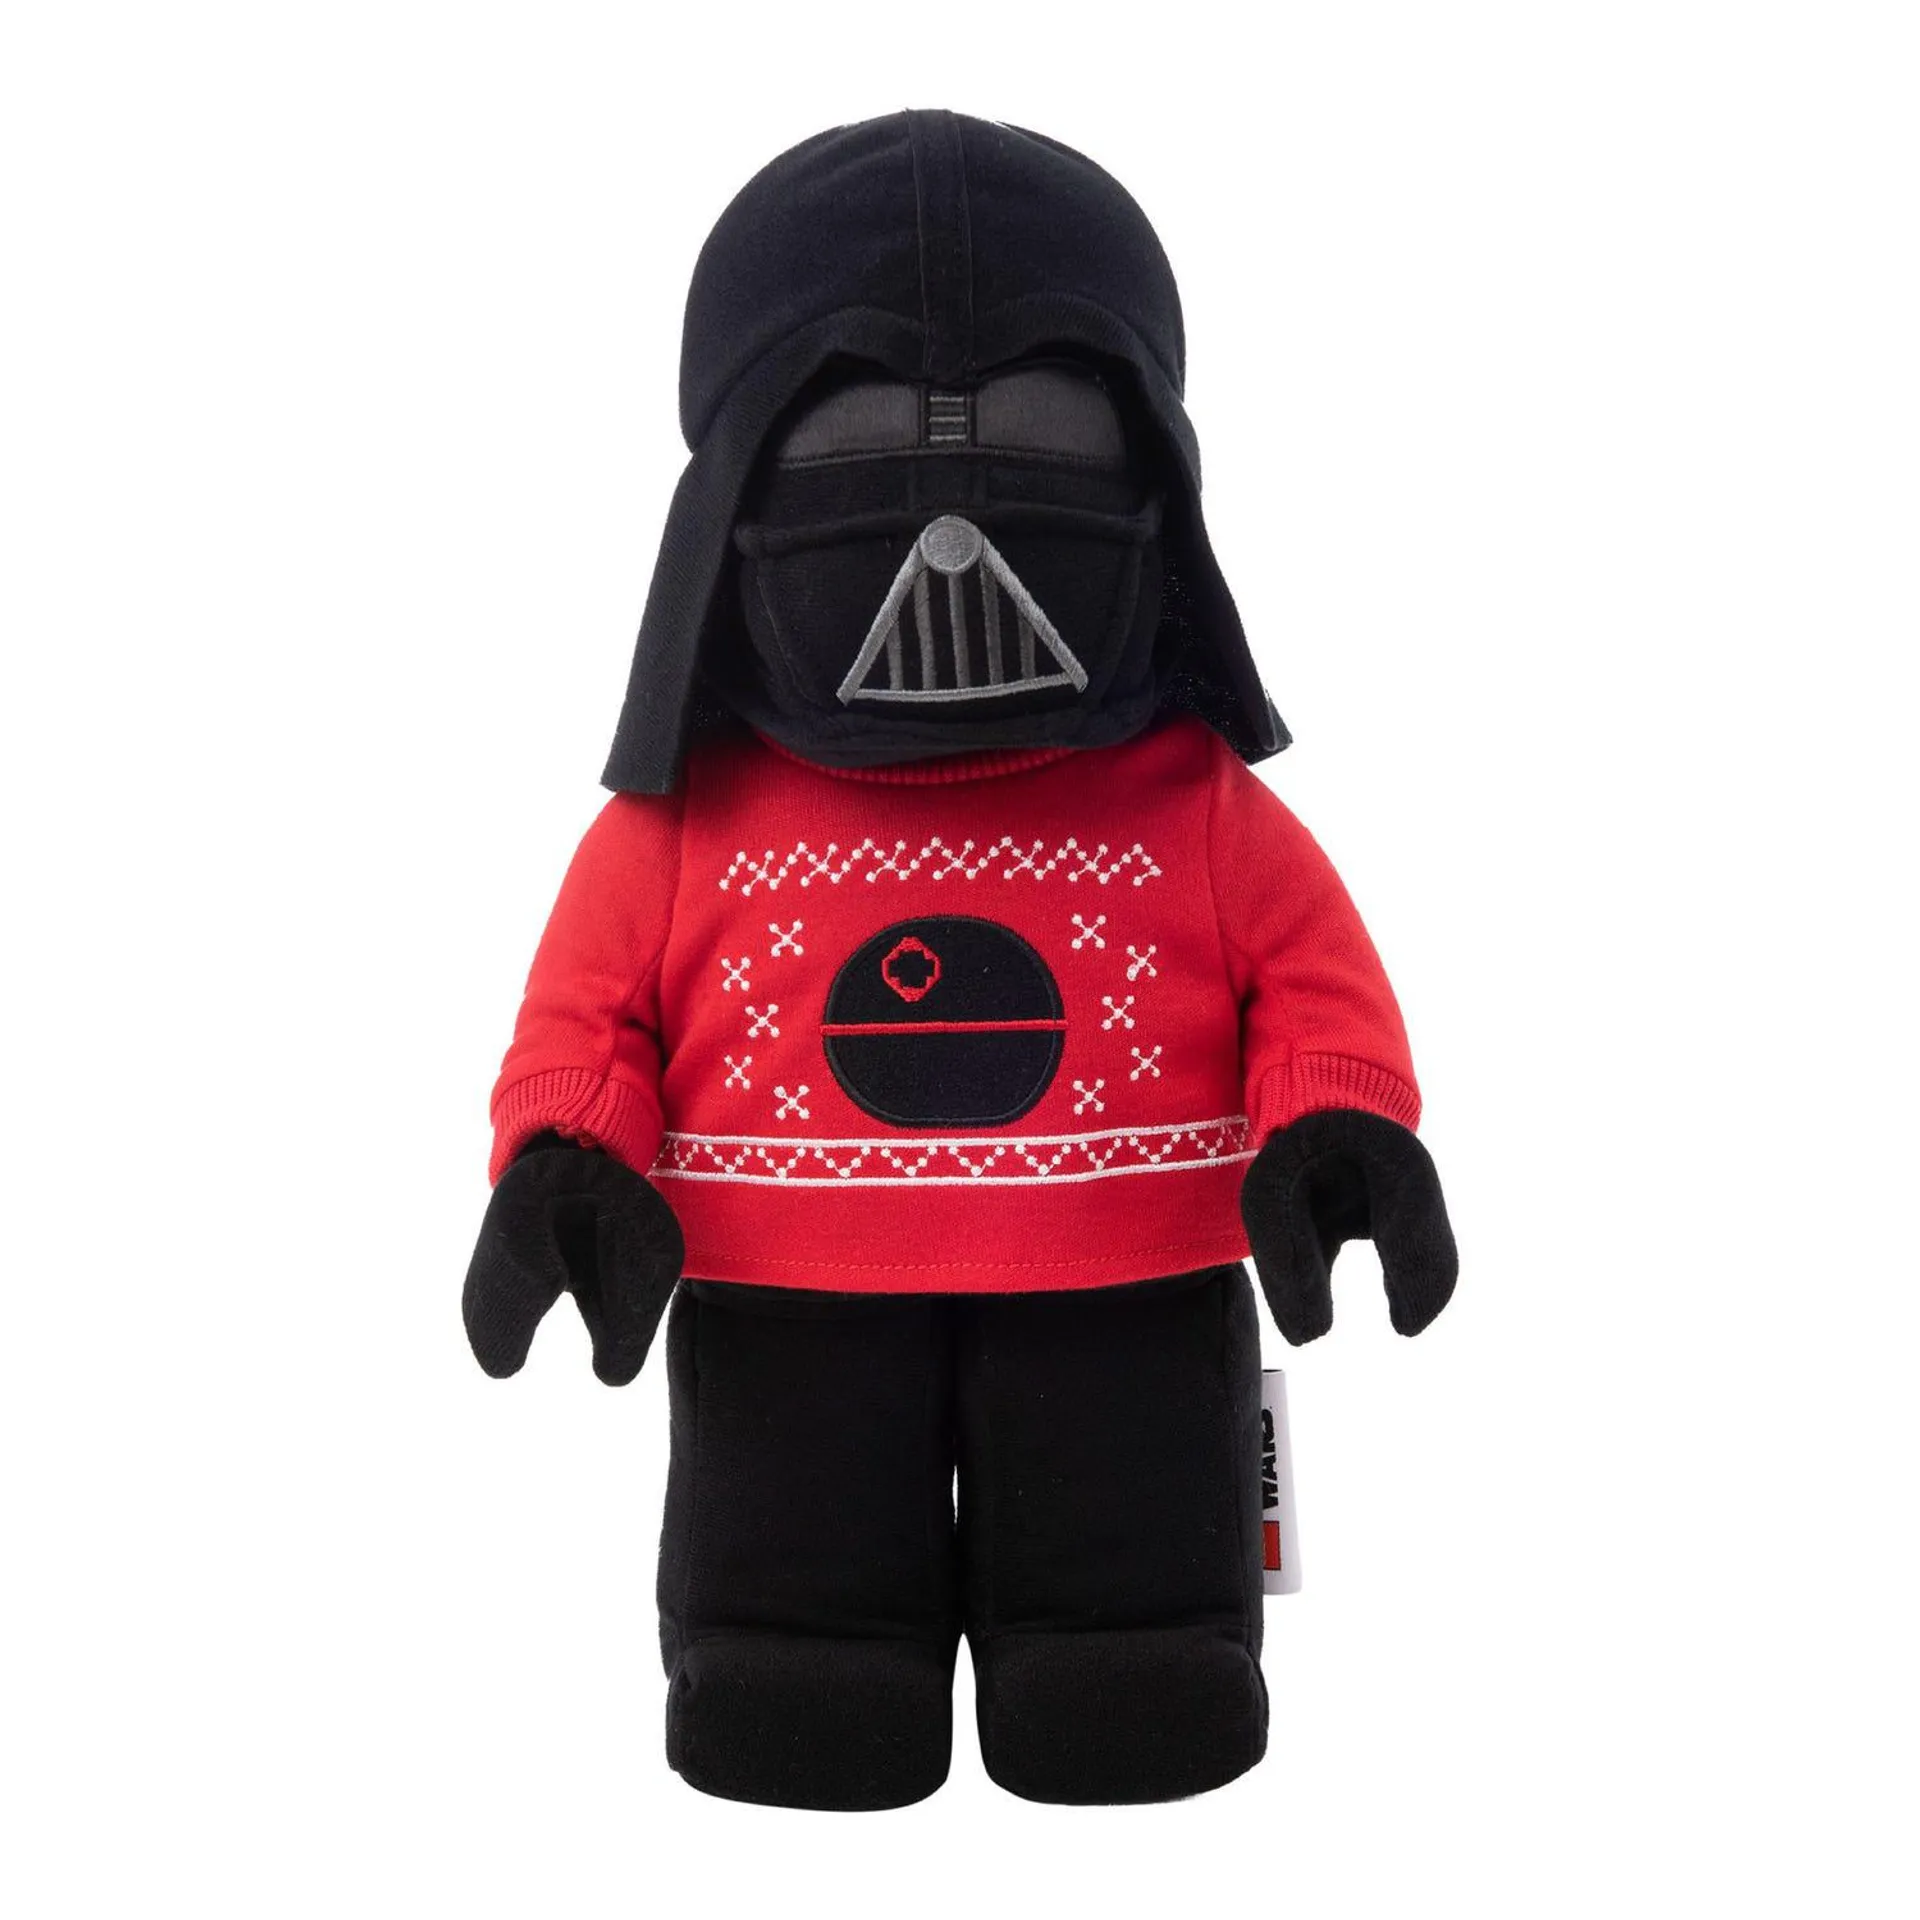 Darth Vader™ Holiday Plush